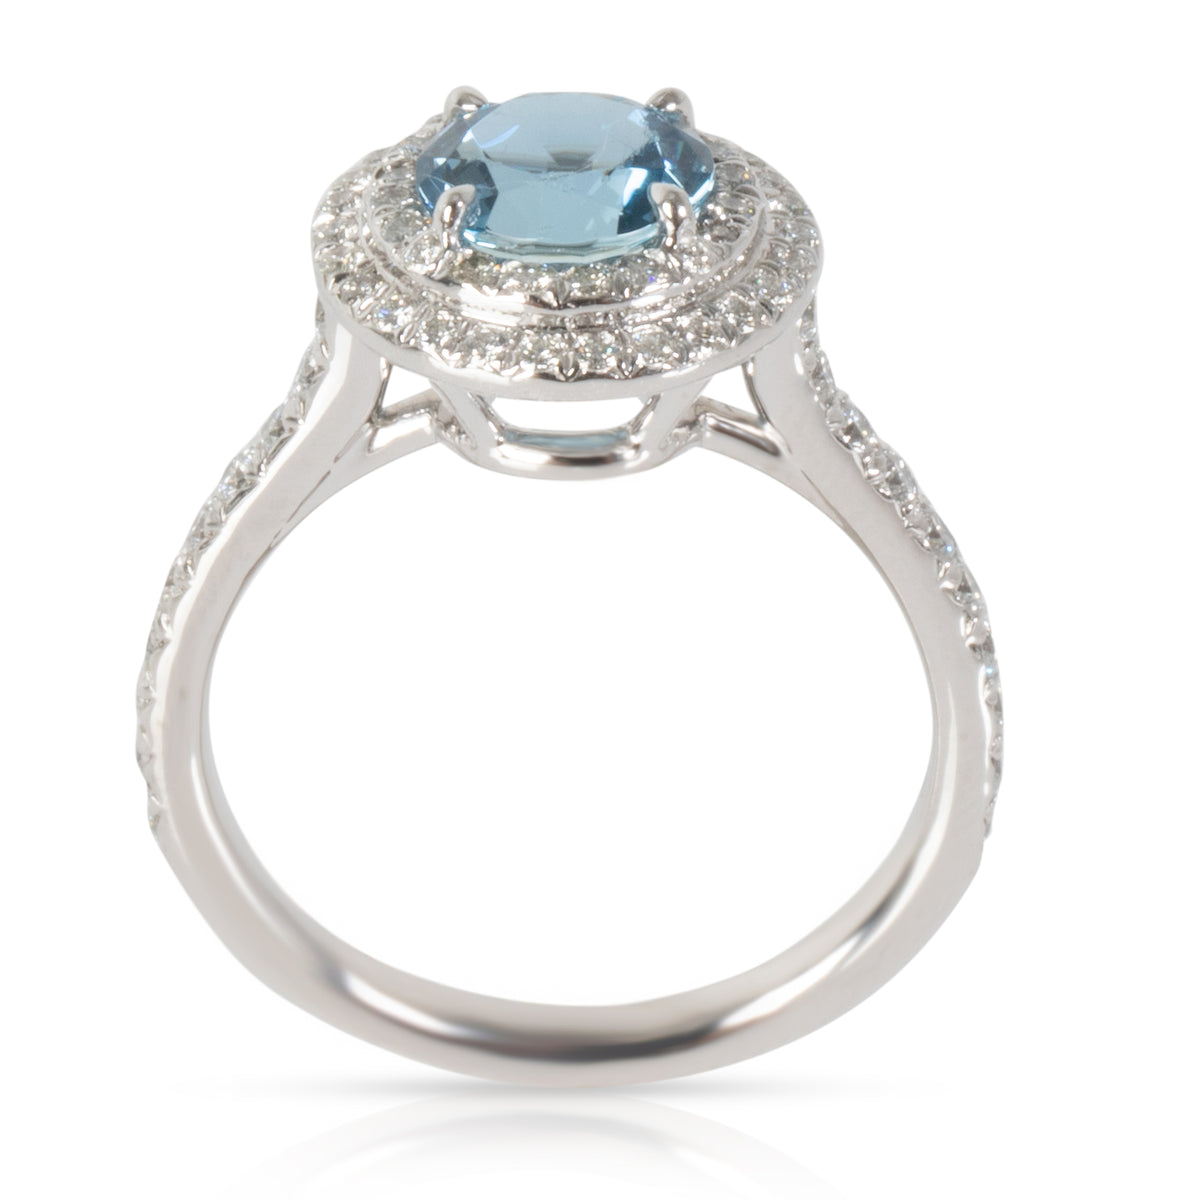 Tiffany & Co. Soleste Aquamarine Diamond Ring in 950 Platinum 0.46 CTW